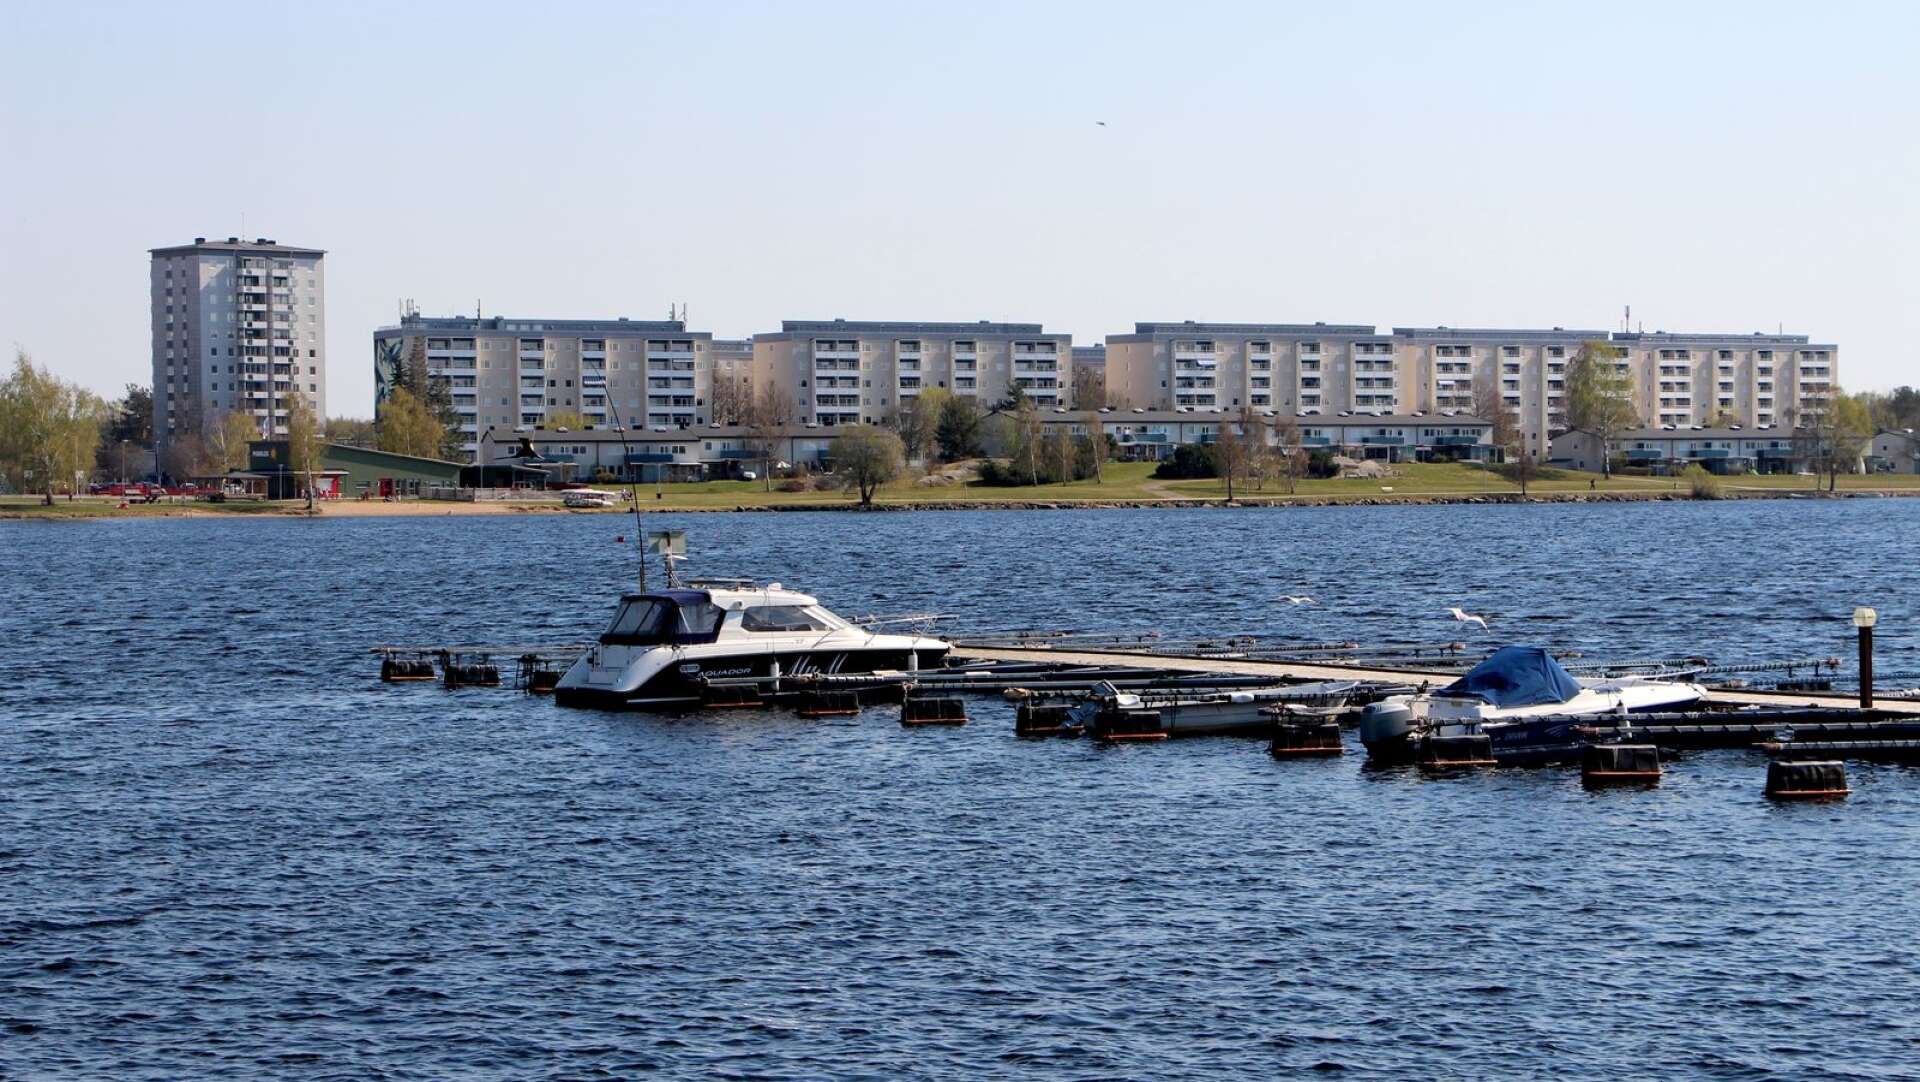 Karlstads kommun har gjort om avtalen för båtplatserna i Karlstad. Det har lett till att köerna har kortats rejält, bland annat i Mariebergsviken.